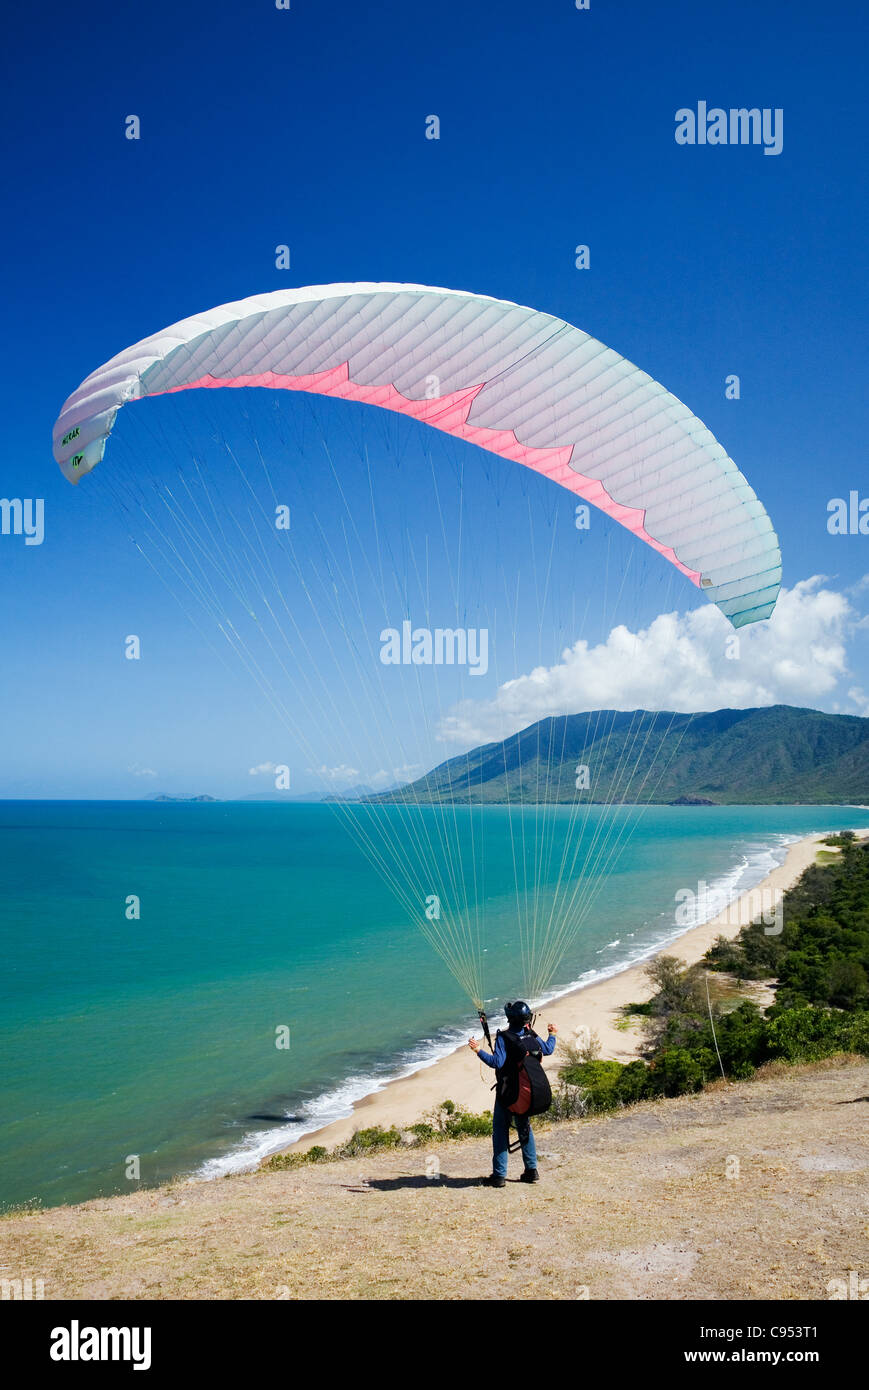 Un parapentiste lance lui-même à partir de Rex Lookout, surplombant la plage de Wangetti, près de Cairns, Queensland, Australie Banque D'Images